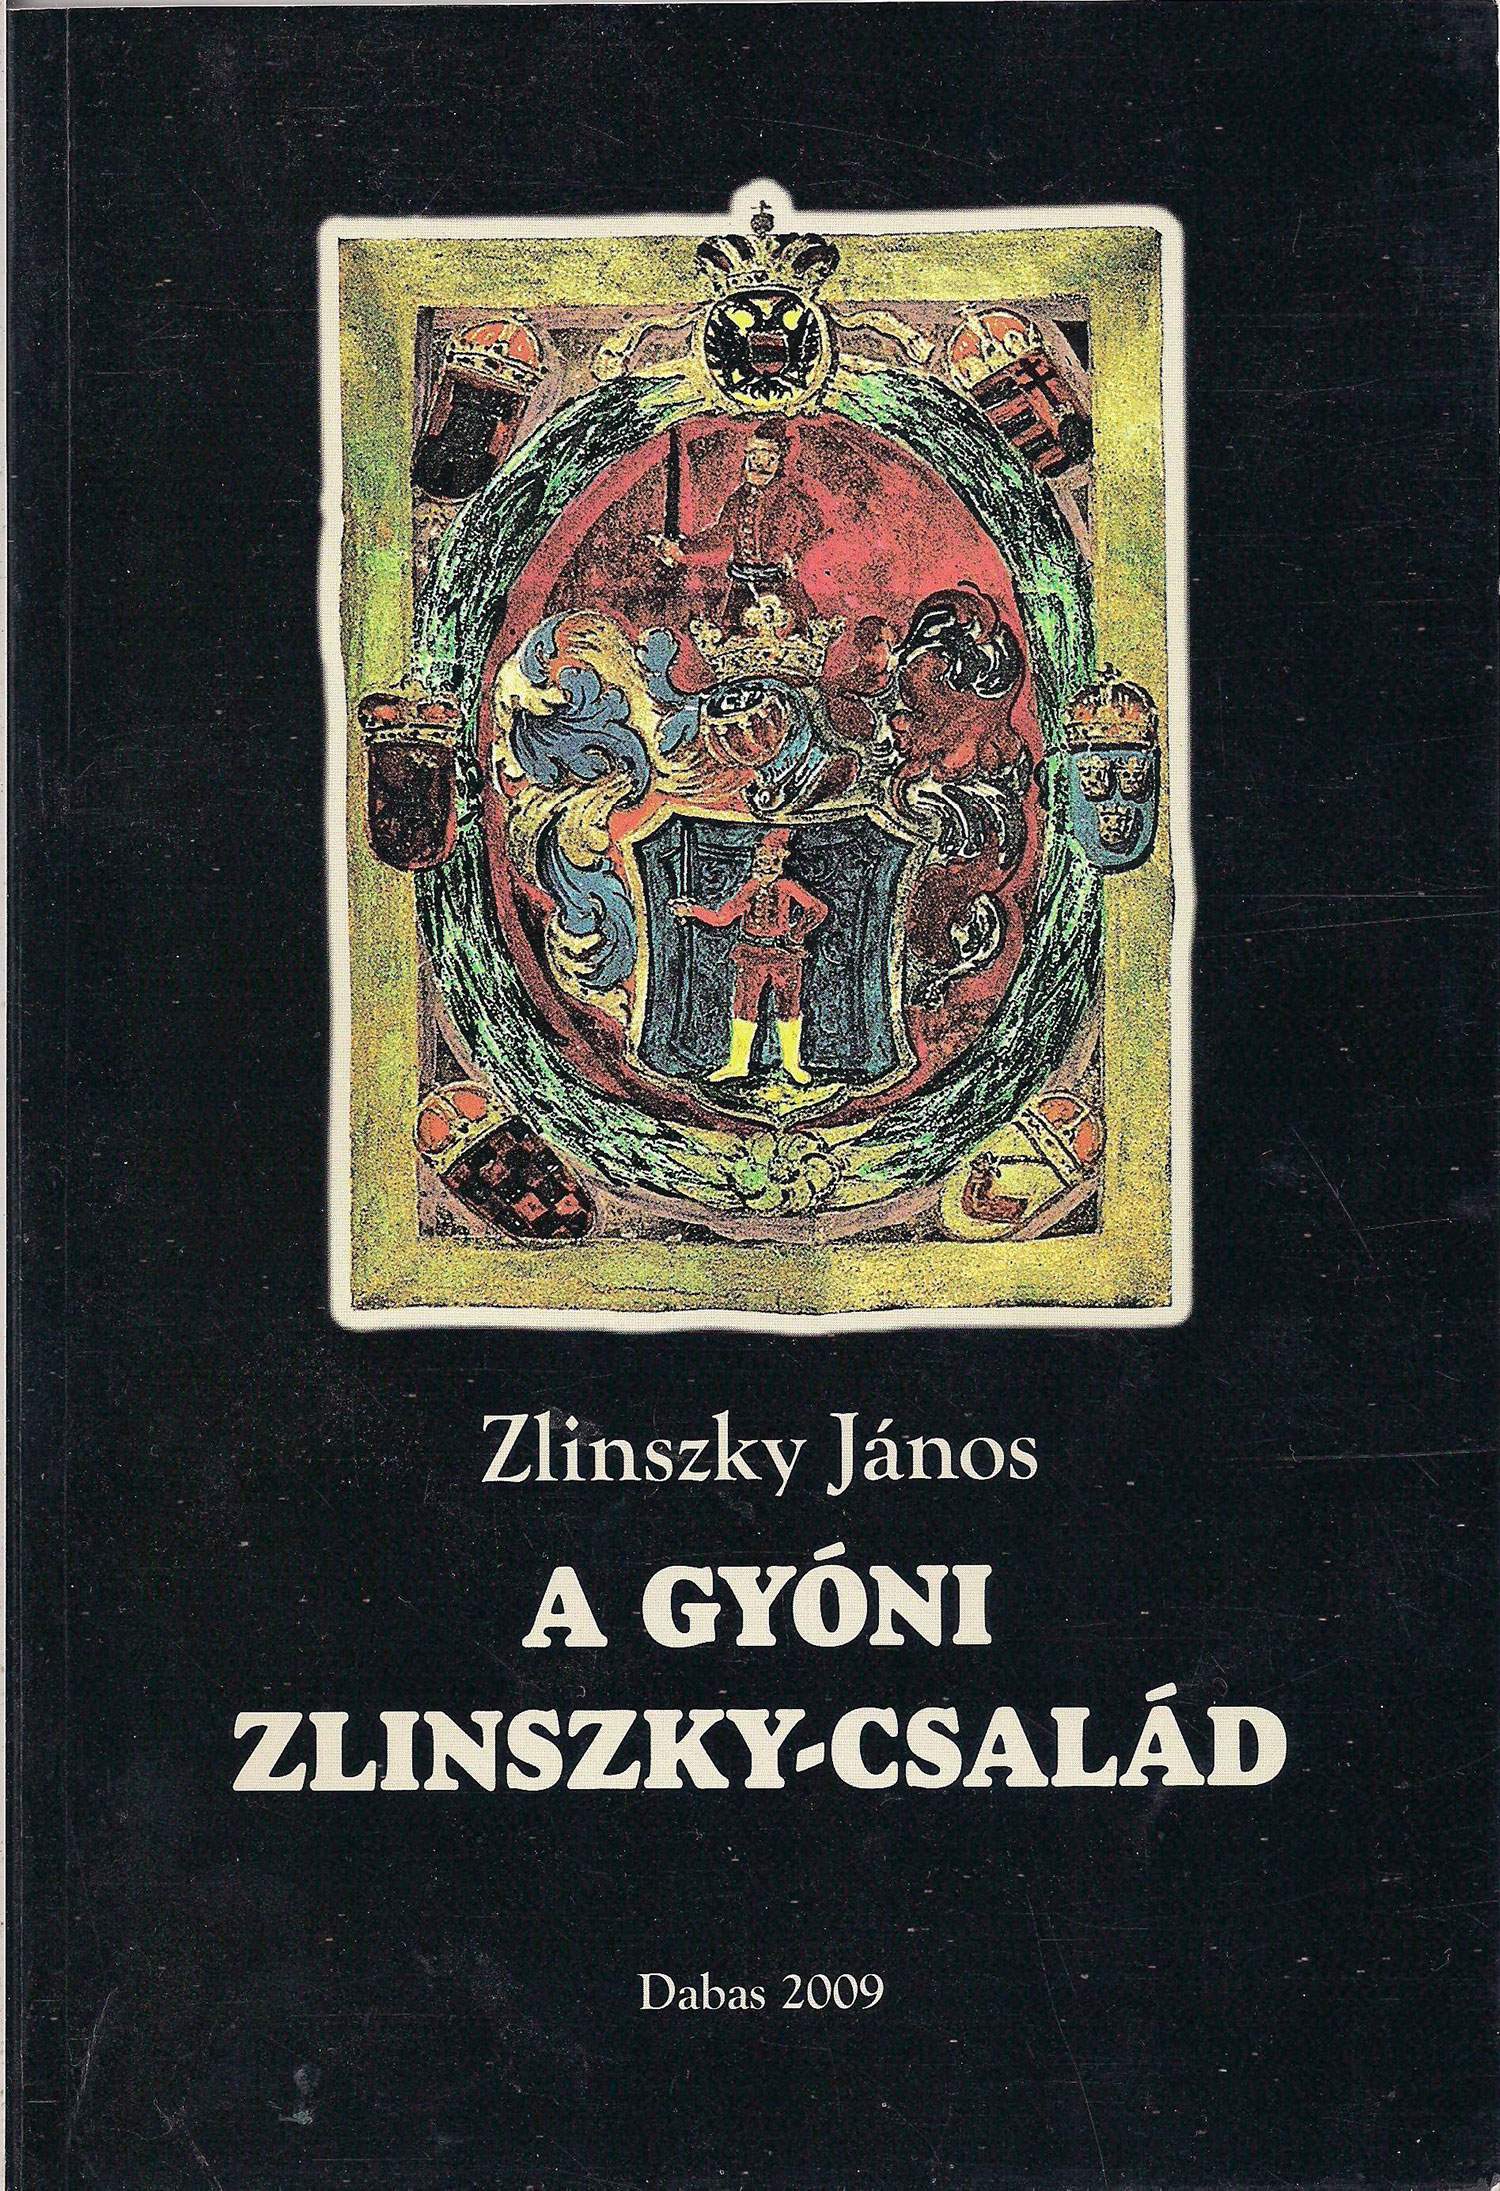 Zlinszky János: A gyóni Zlinszky-család című kötete